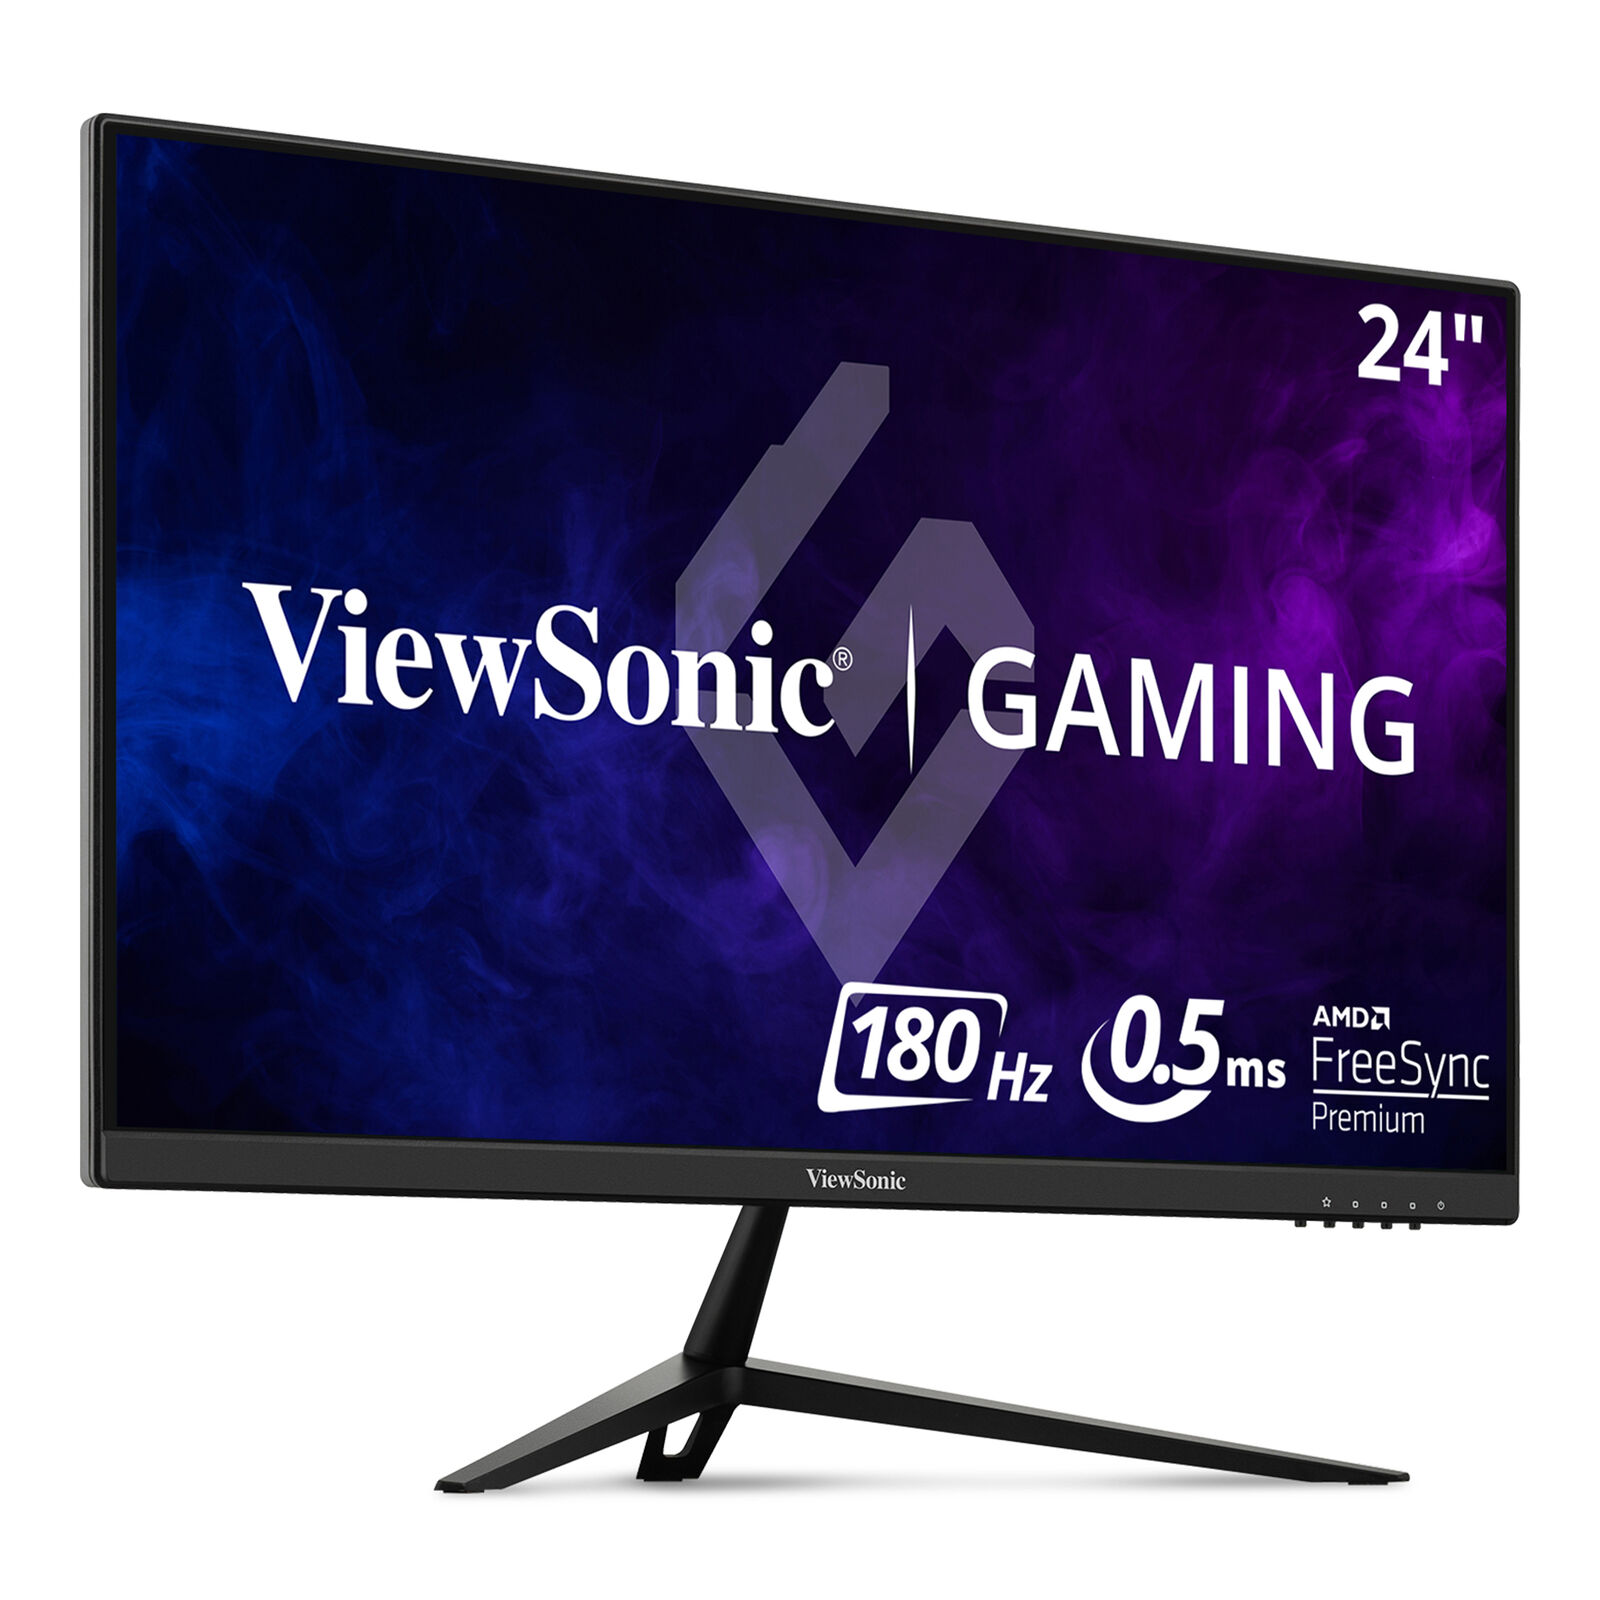 ViewSonic  VX2428 FreeSync  Gaming Monitor  24